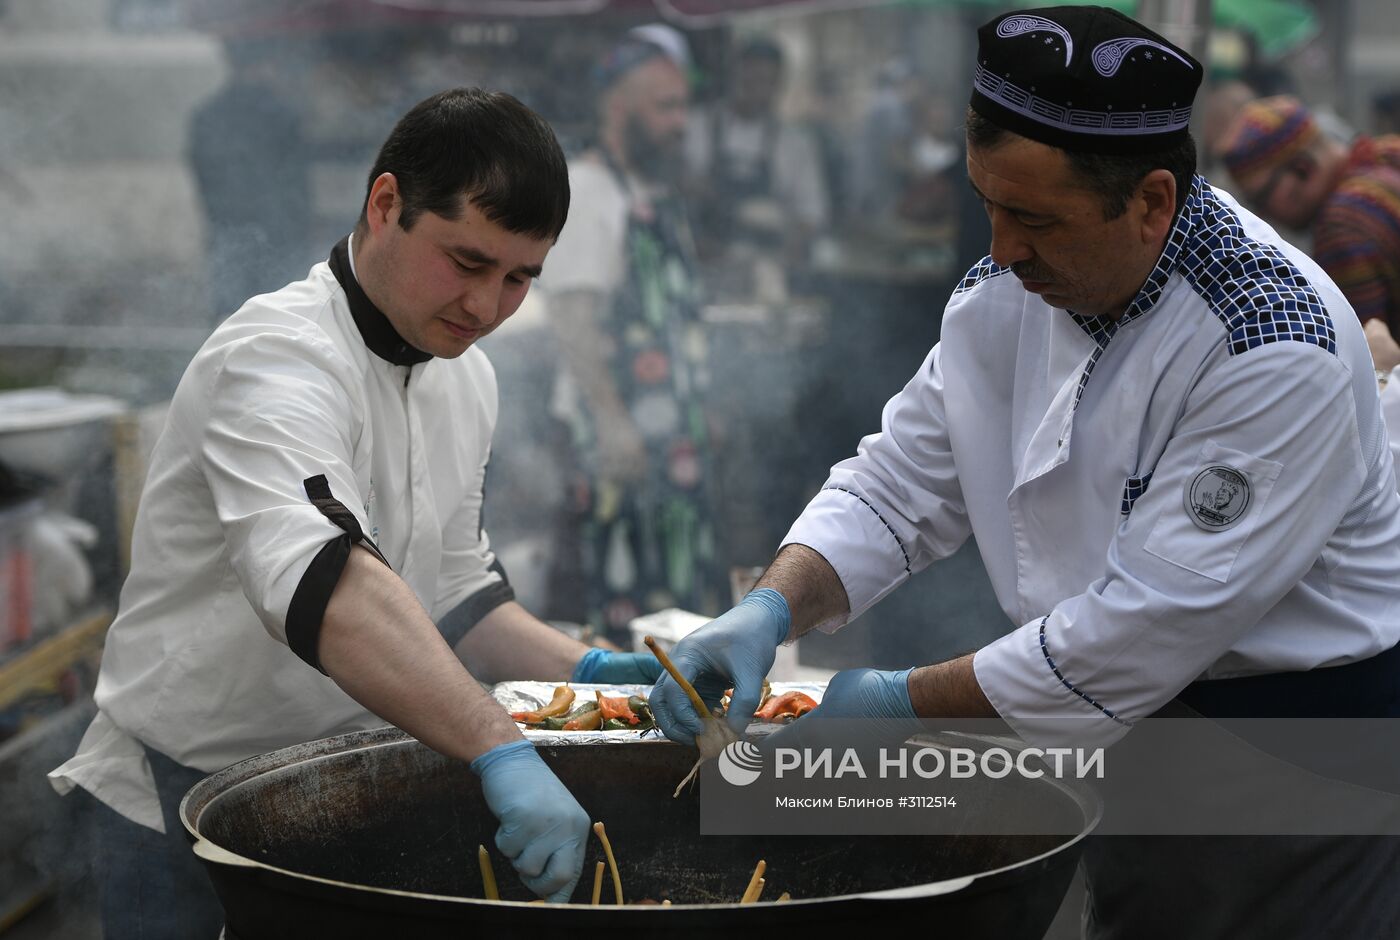 Кулинарный фестиваль "Культ плова" в Москве